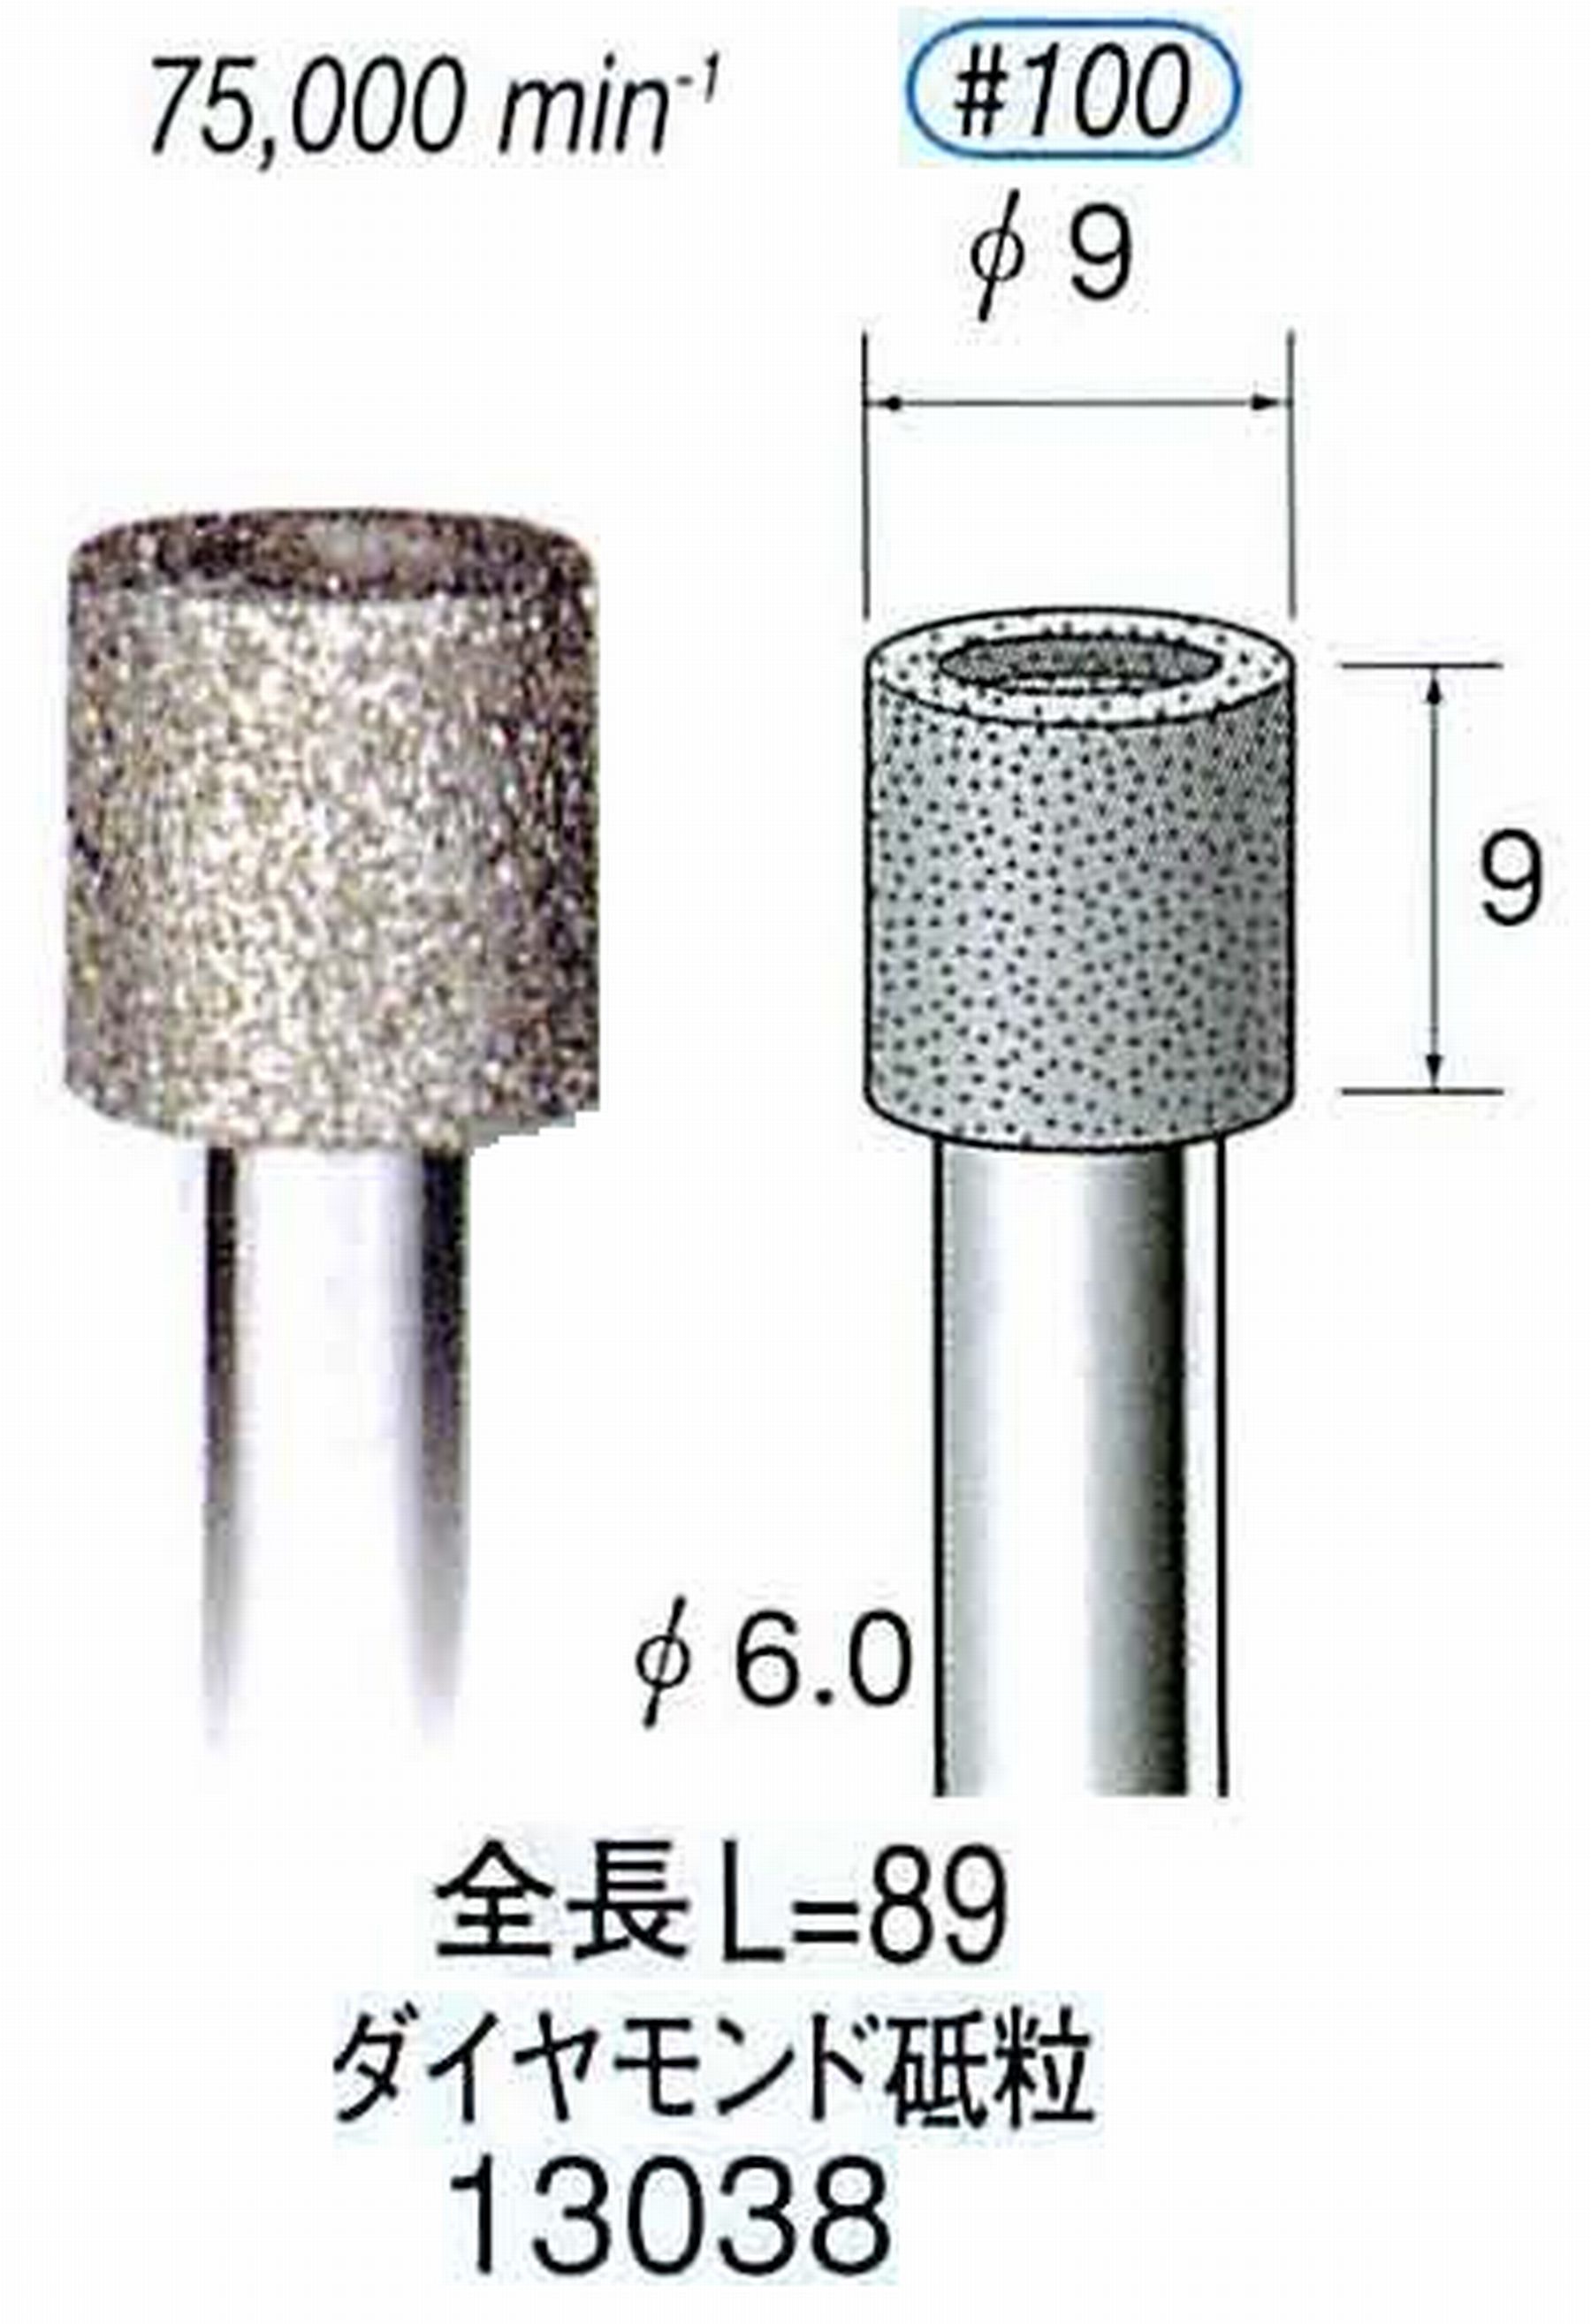 ナカニシ/NAKANISHI 電着ダイヤモンド ダイヤモンド砥粒 軸径(シャンク)φ6.0mm 13038